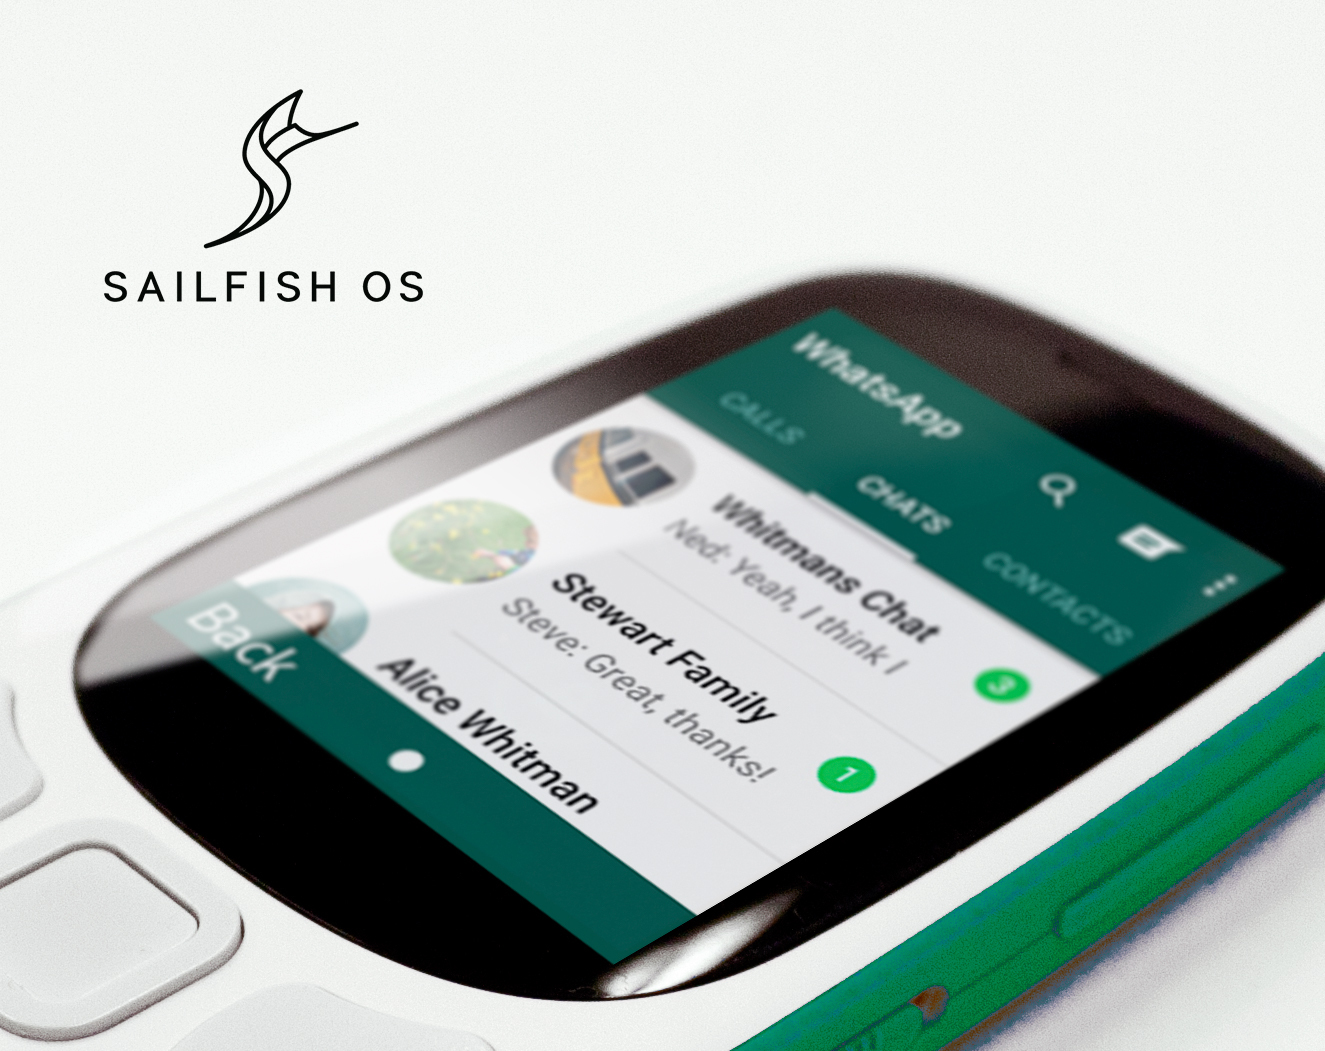 Sailfish OS 3 platformu cep telefonlarını akıllı hale getirecek